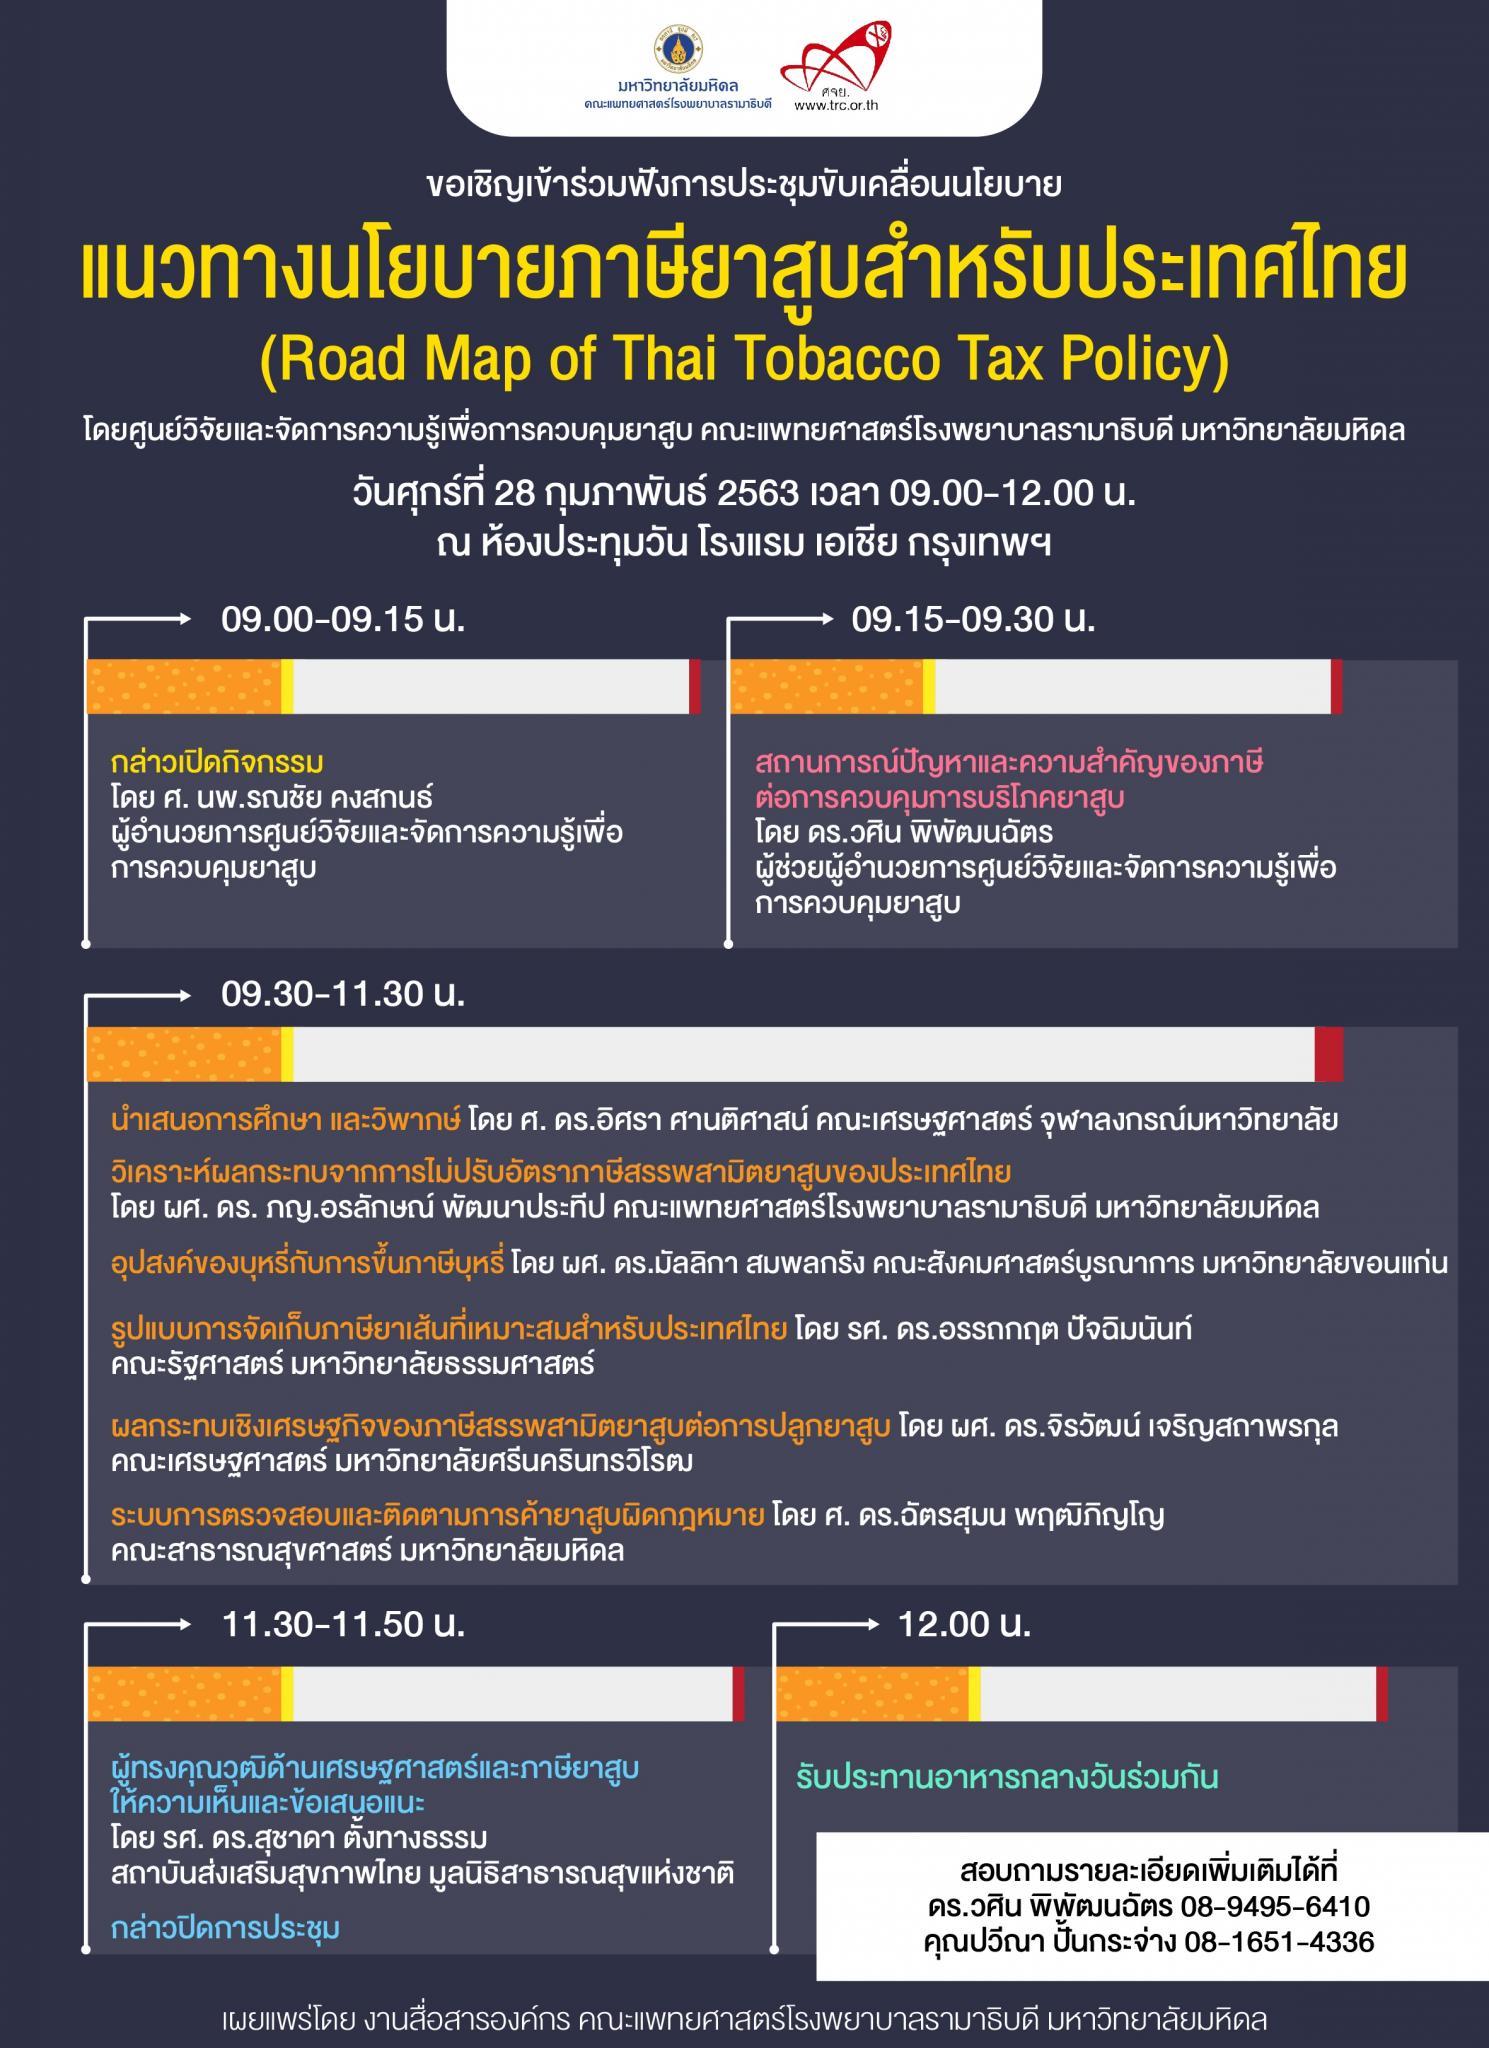 ขอเชิญเข้าร่วมฟังการประชุมขับเคลื่อนนโยบาย แนวทางนโยบายภาษียาสูบสำหรับประเทศไทย (Road Map of Thai Tobacco Tax Policy)